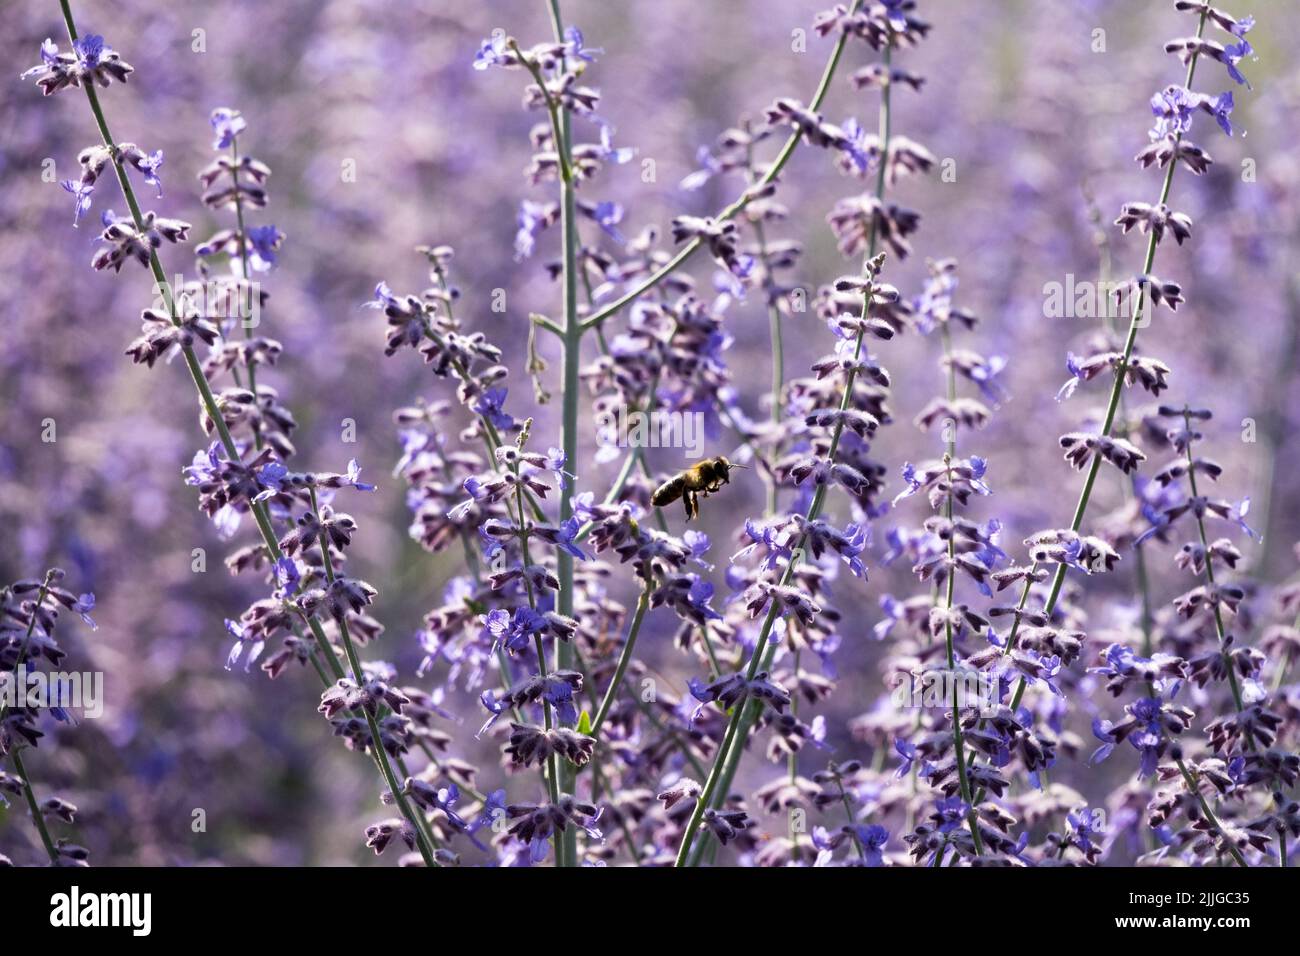 Shrubby, Salvia yangii, Russian Sage, Perovskia atriplicifolia 'Blue Spire', Salvia, Plant, Sage, Perennial close-up flowering stems Stock Photo